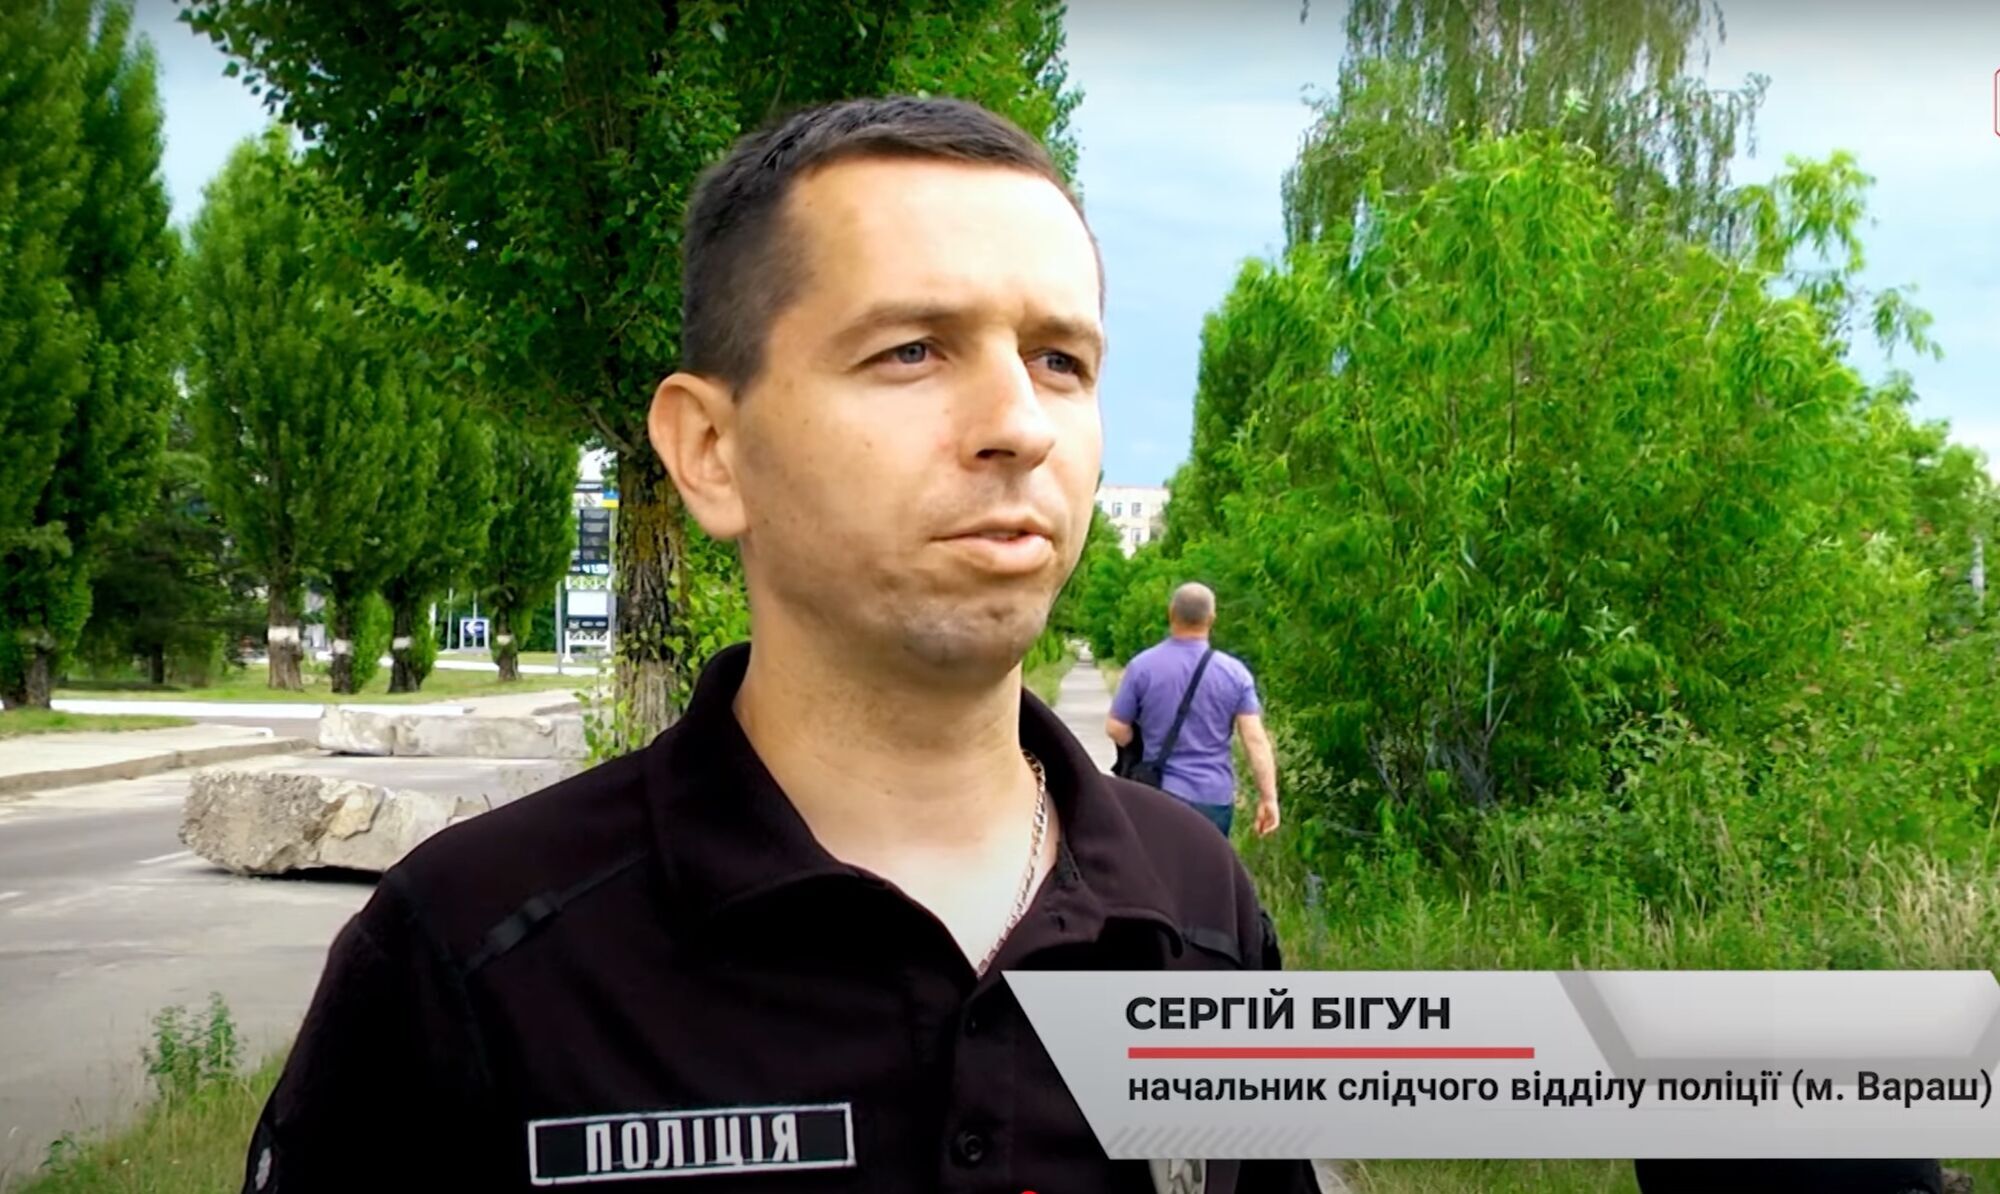 Начальник следственного отдела полиции г. Вараш Сергей Бегун